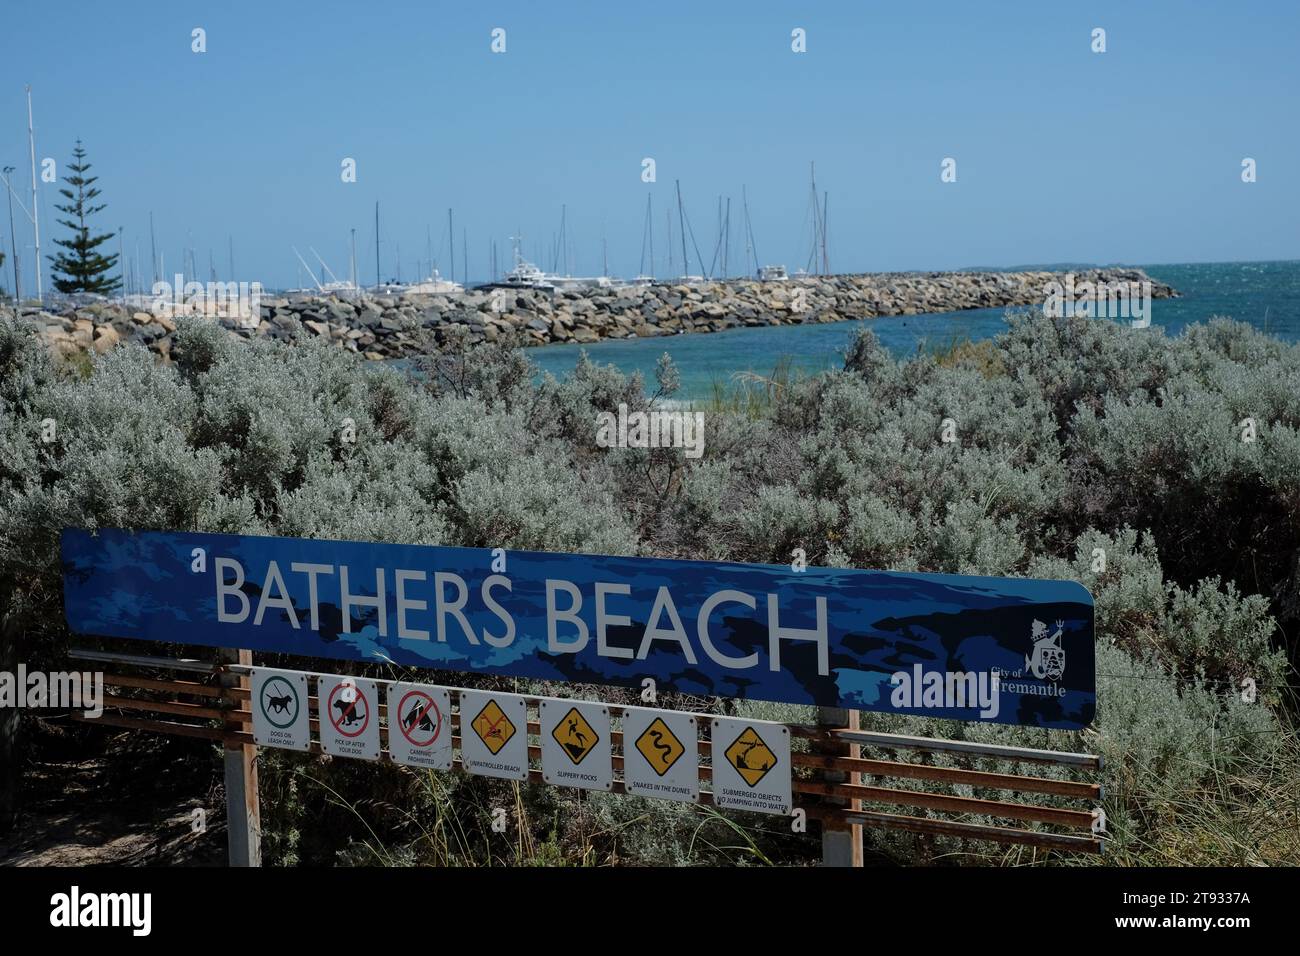 Bathers Beach signe avec des arbustes côtiers, des avertissements, des serpents - digue et marina en arrière-plan de ce paysage côtier australien Banque D'Images